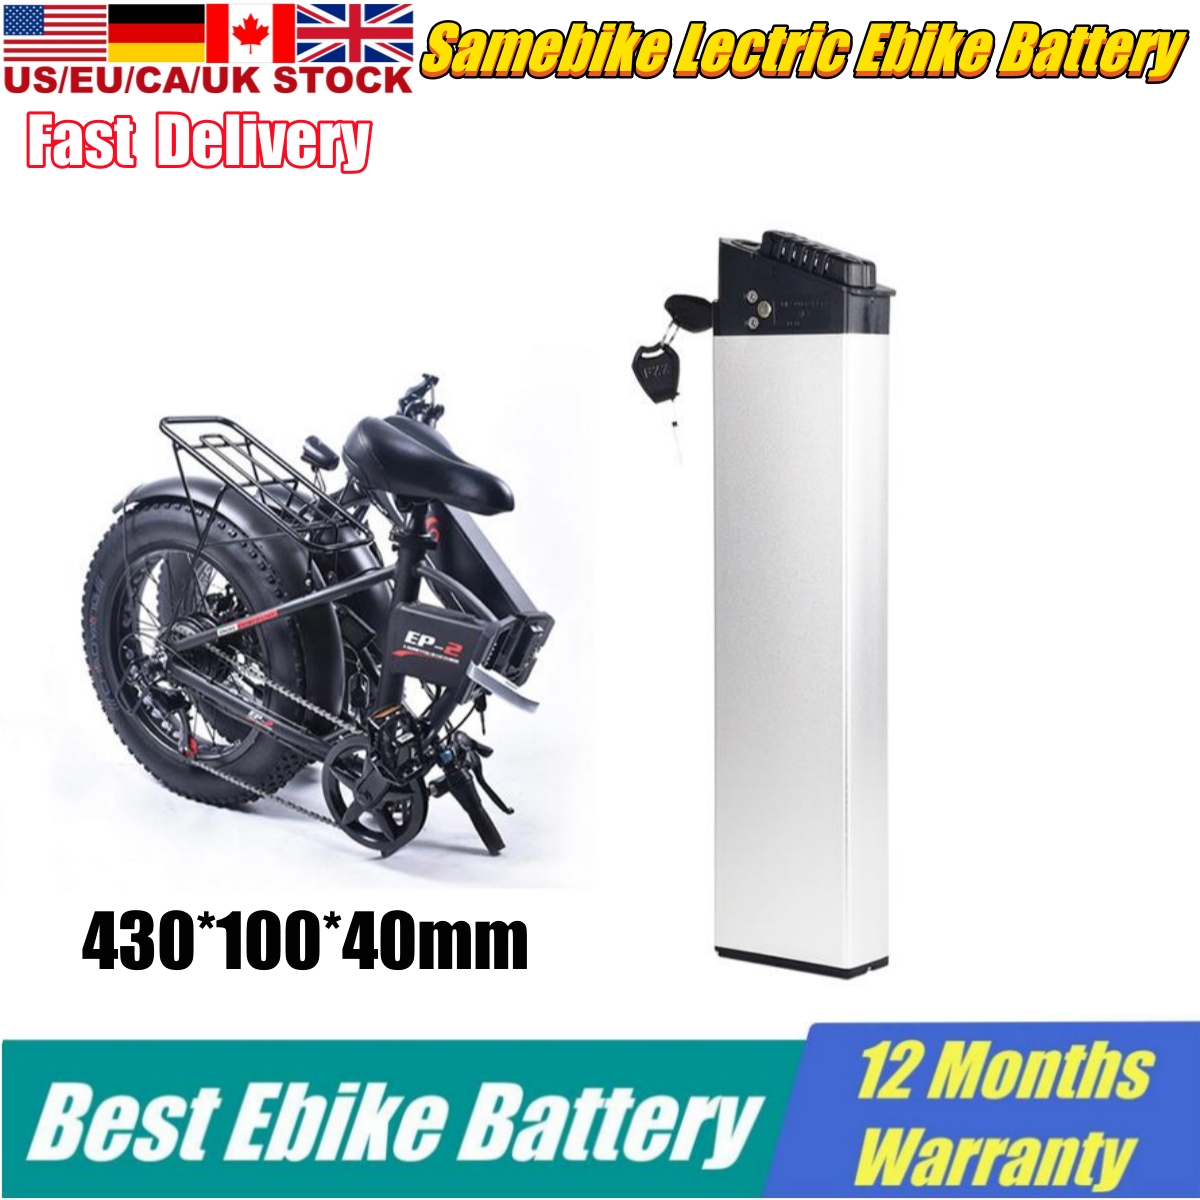 

48v Li ion Ebike Battery 48 v Folding ebike 750w 48v 10.4Ah 12.8Ah 14Ah Built-in Electric Bike Akku for 350w 500W 750W 1000w DCH-006 E Bike Foldable e-Bike